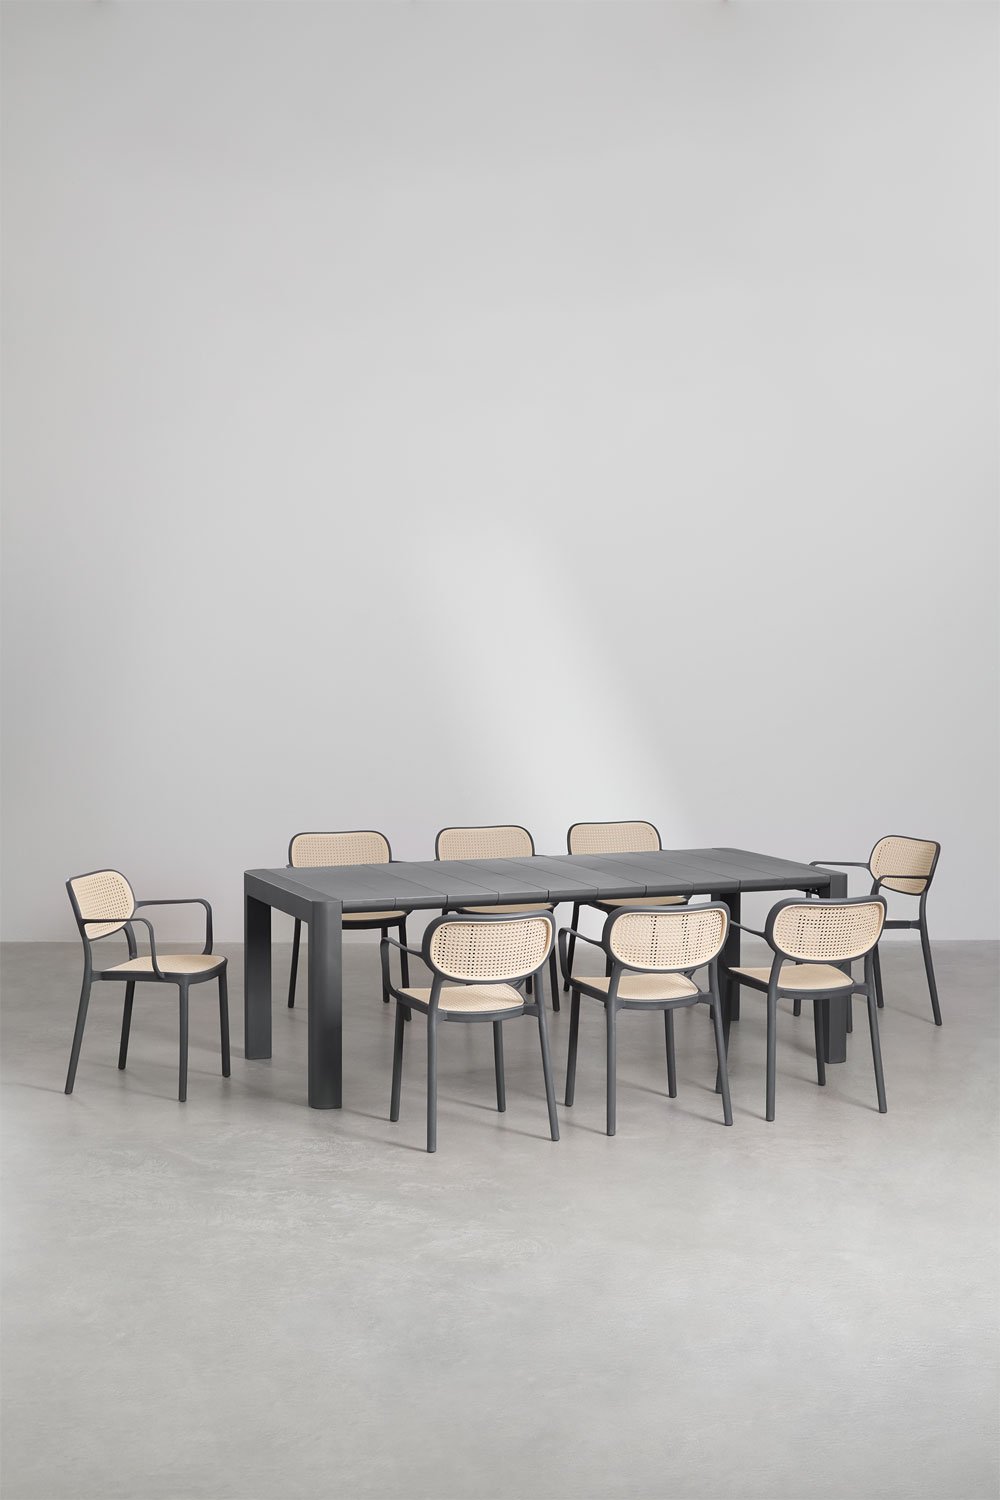 Arnadine rechthoekige tafelset (220x100 cm) en 8 stapelbare eetkamerstoelen met Omara armleuningen, galerij beeld 1